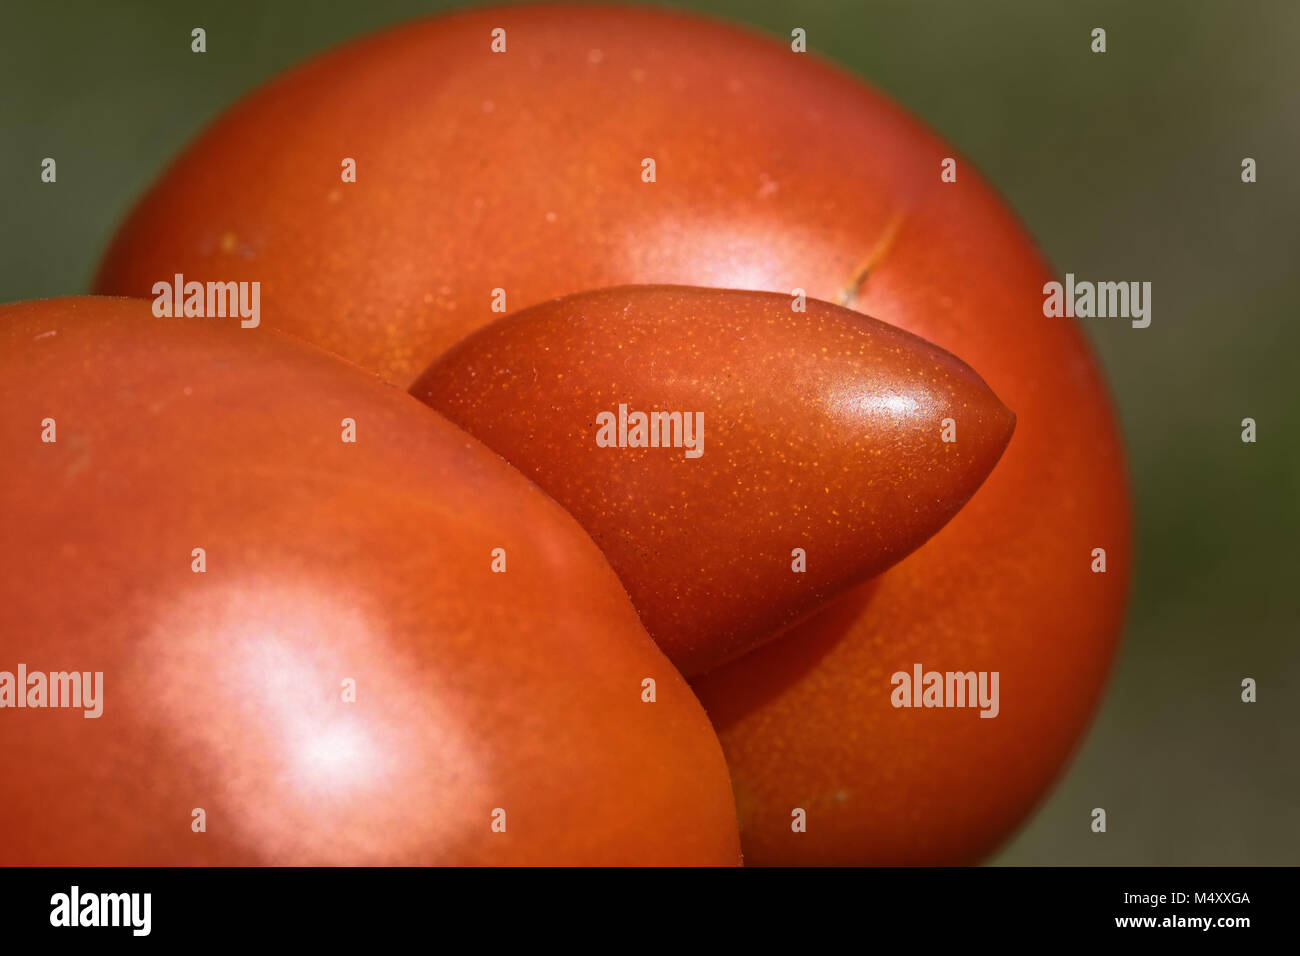 tomato triplet Stock Photo